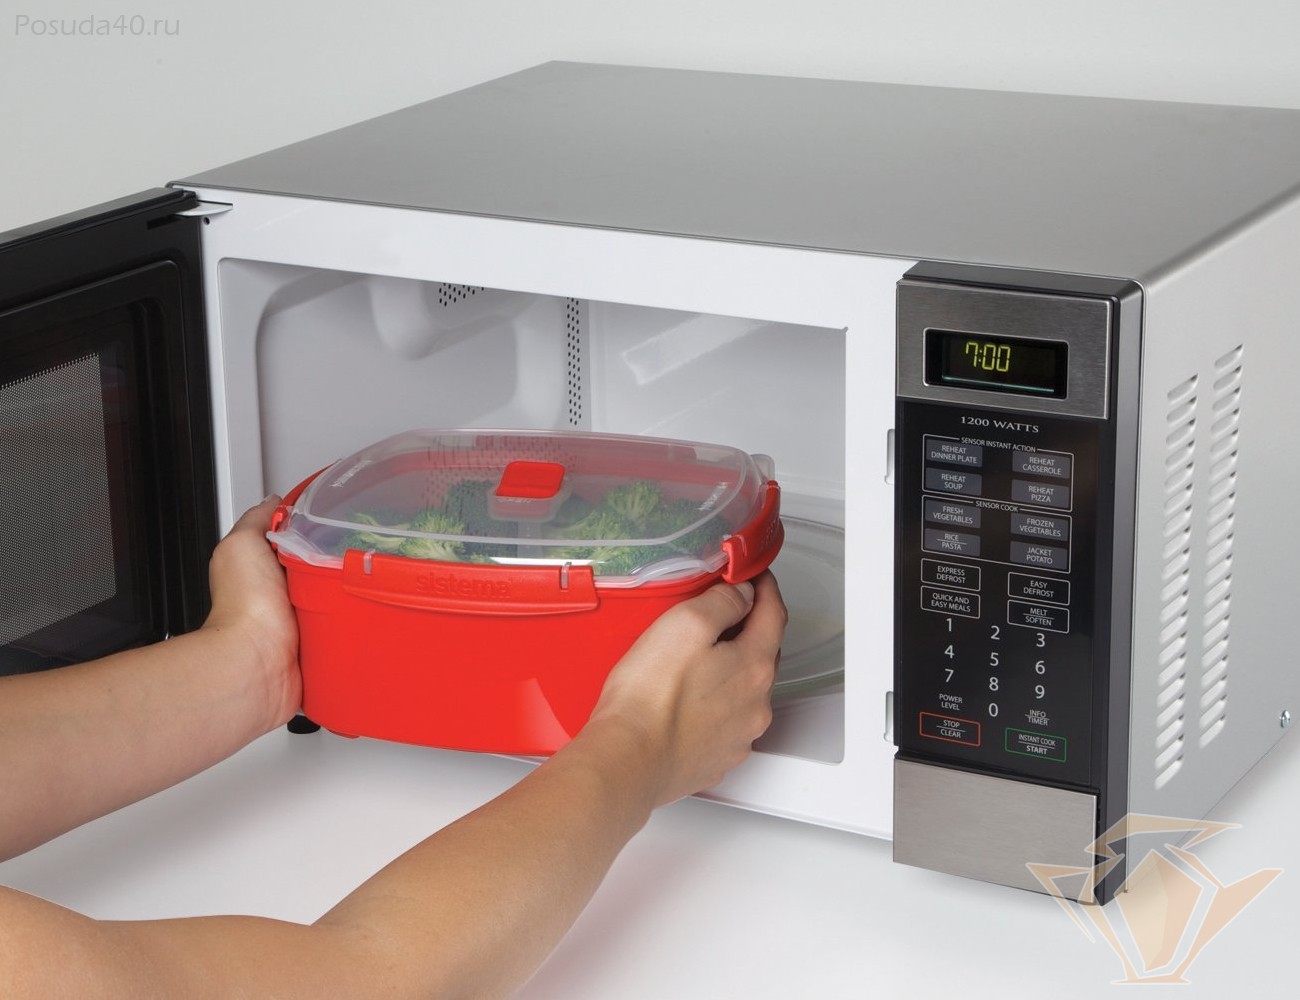 Какую посуду можно использовать в микроволновке: какие тарелки нельзя ставить